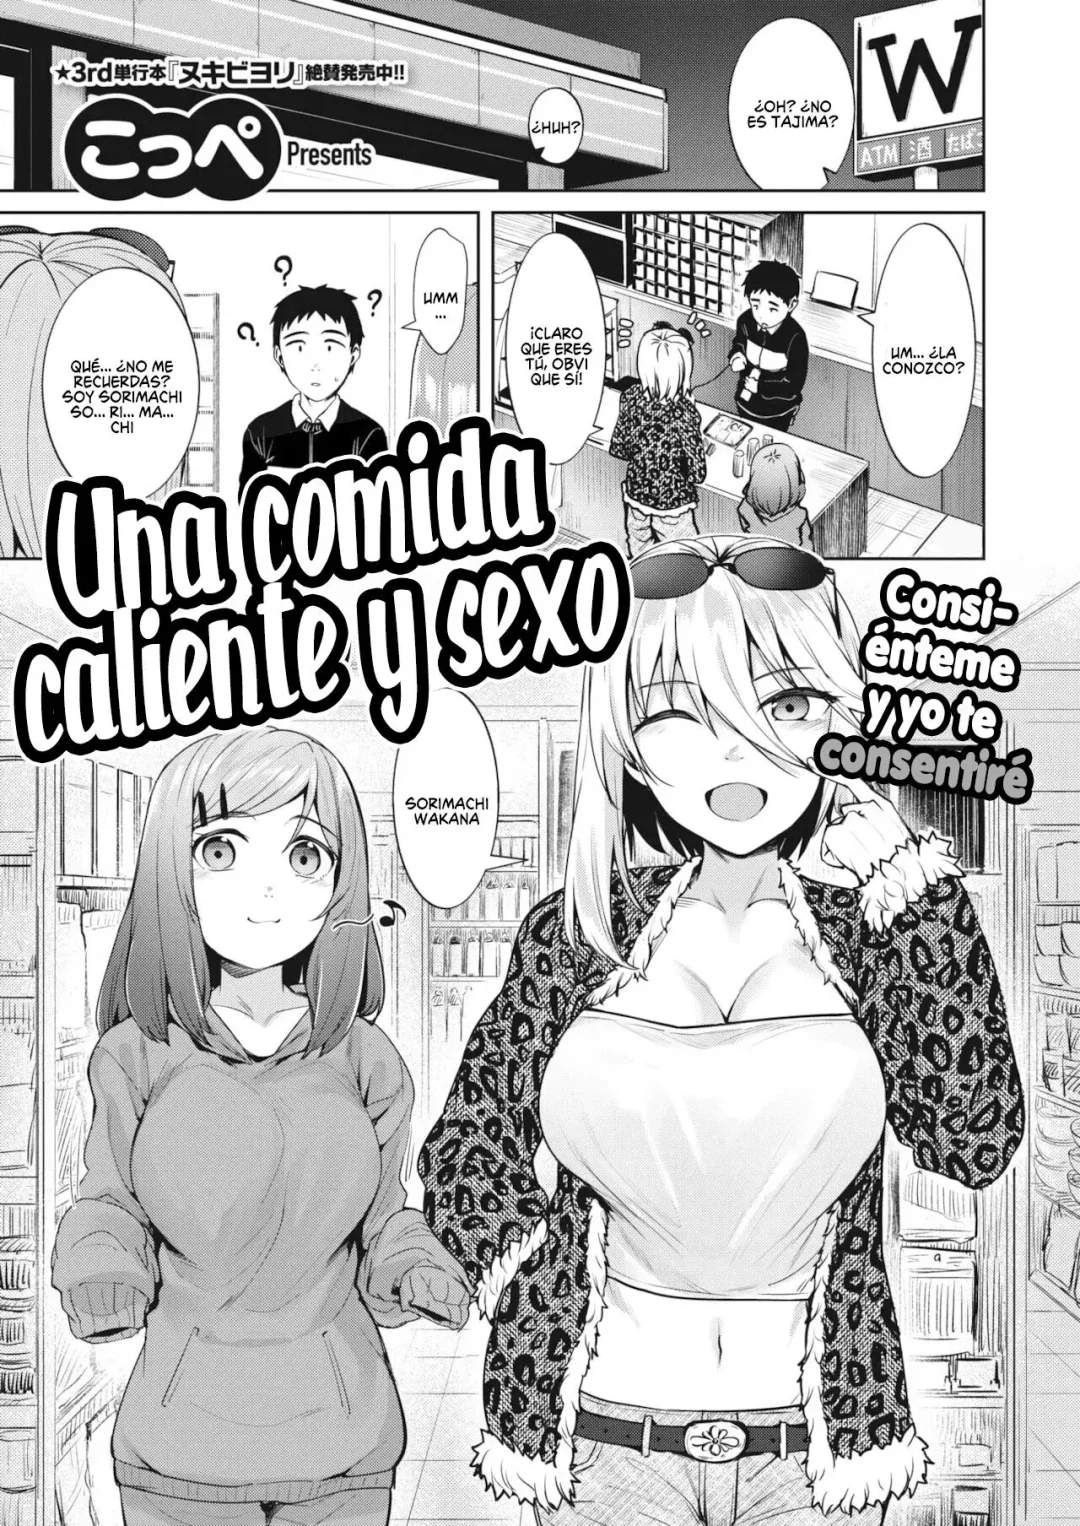 Donde leer gratis mangas hentai nakadashi del artista Coupe, en la web del porno doujinshi más caliente. Jovencitas comiendo polla con cara ahegao. Historia poliamor. Muchos comics porno en español gratis recopilados de internet.